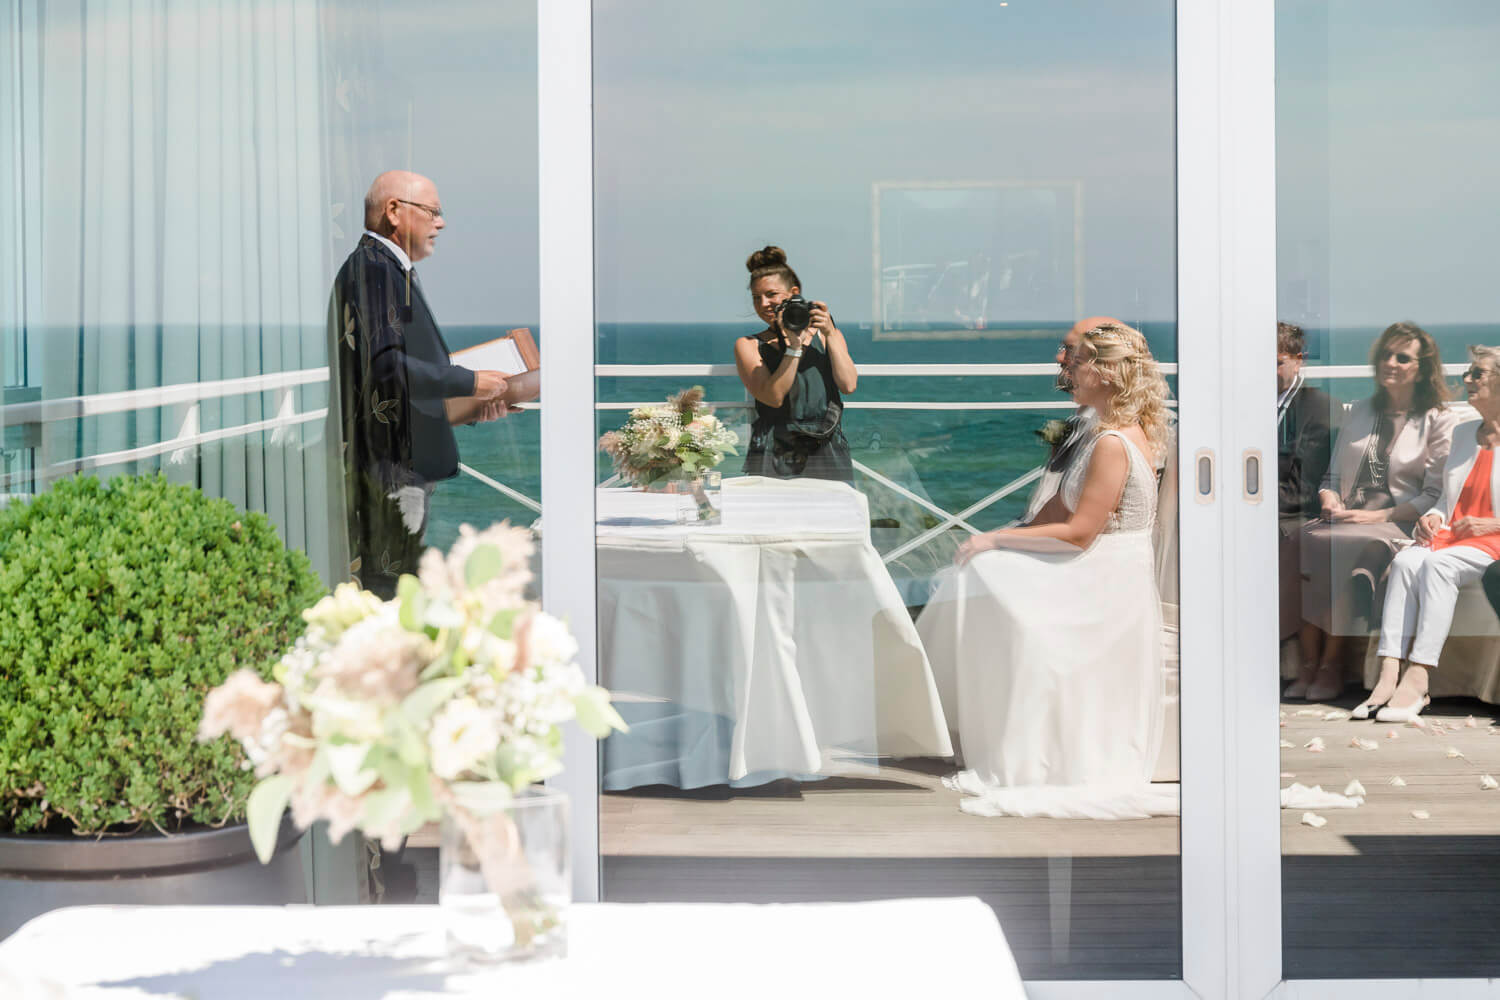 Spiegelung im "Hotel Fischland" auf der Dachterrasse zur standesamtlichen Trauung mit Blick auf die Fotografin und das Meer.